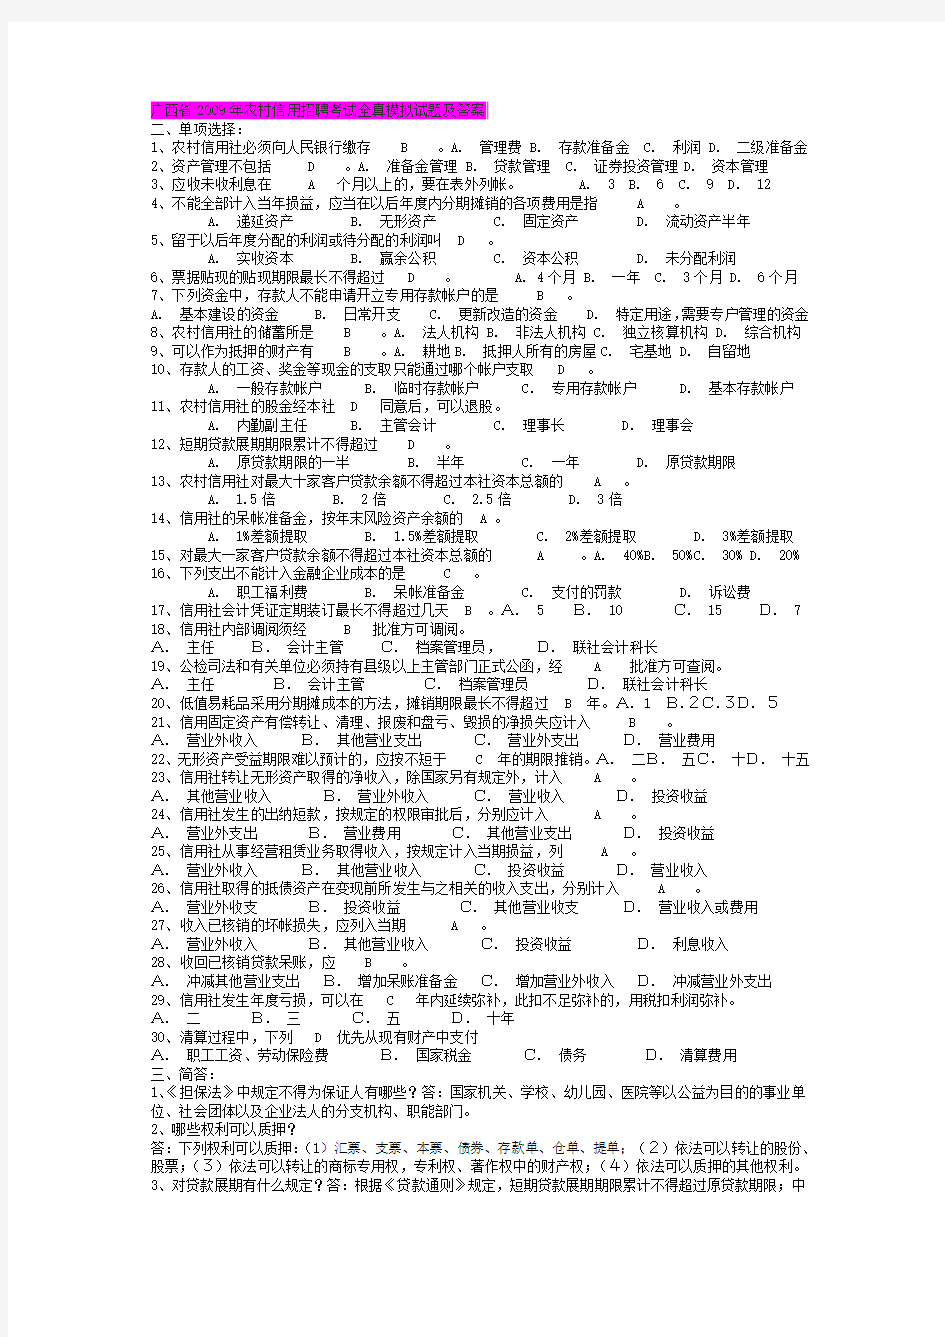 广西省2009年农村信用招聘考试全真模拟试题及答案